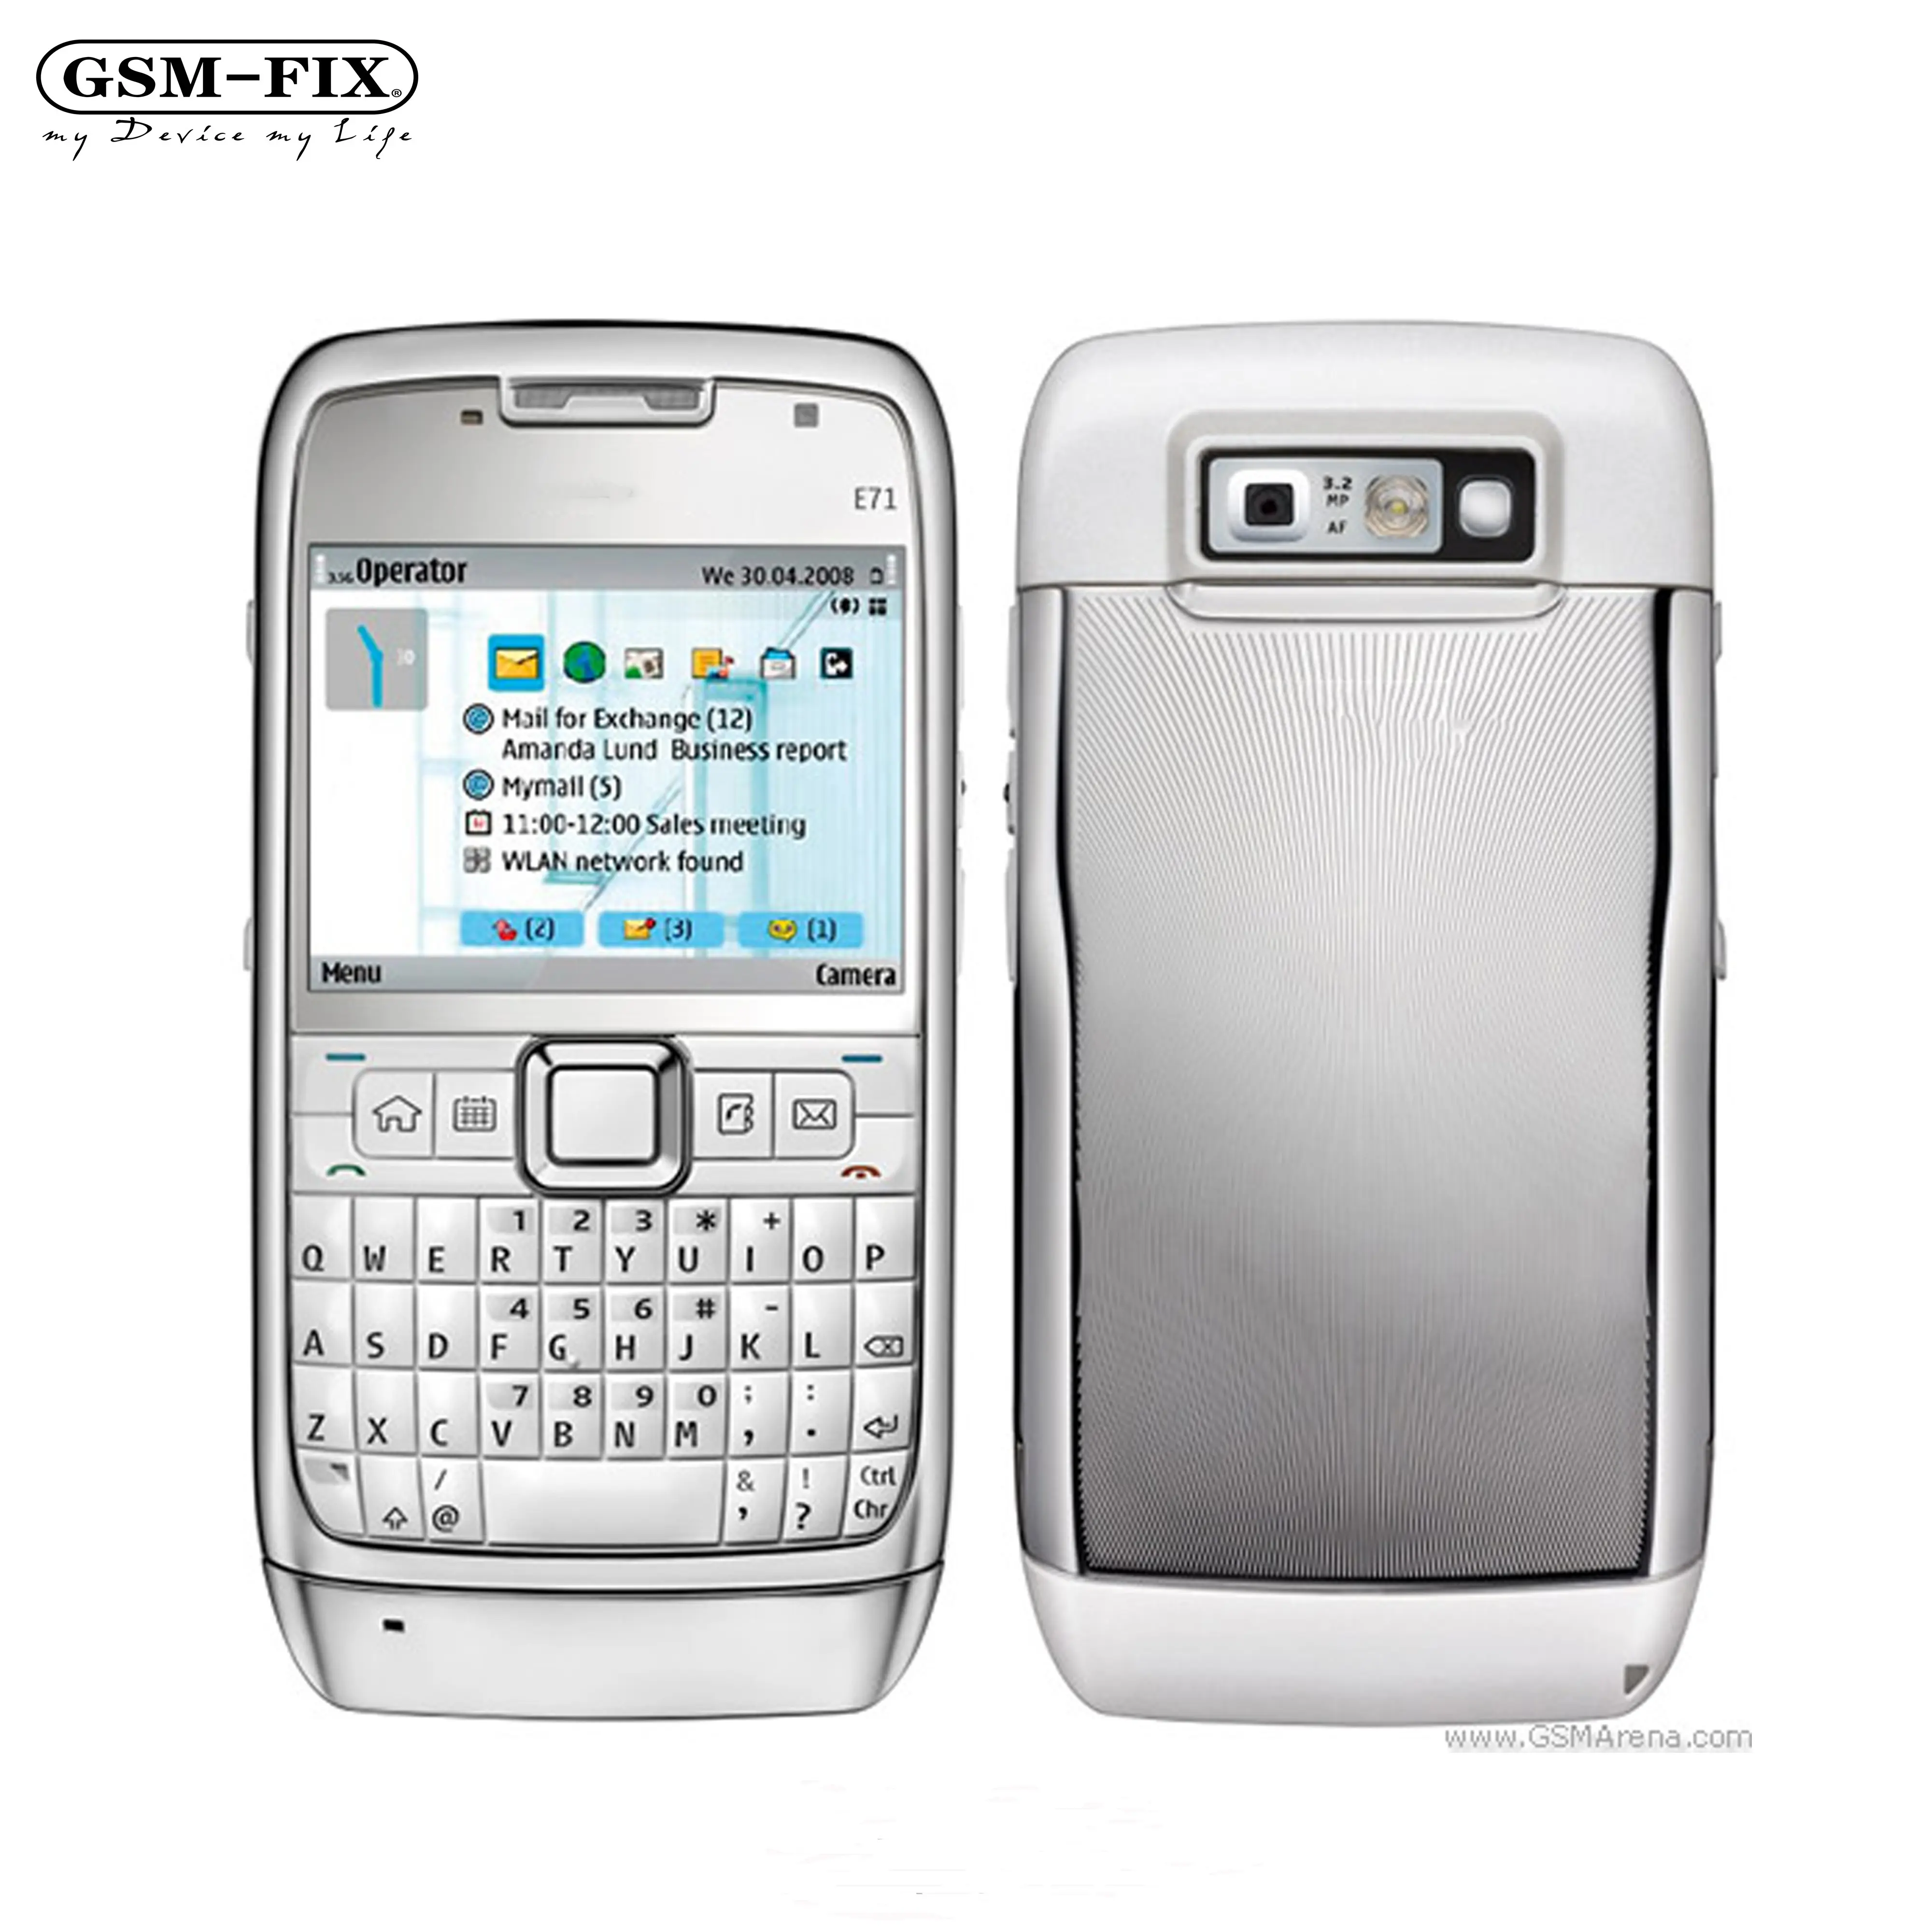 Nokia e71 GSM-FIX original, para celular nokia 3.2mp 3g desbloqueado para teclado qwerty, telefone móvel